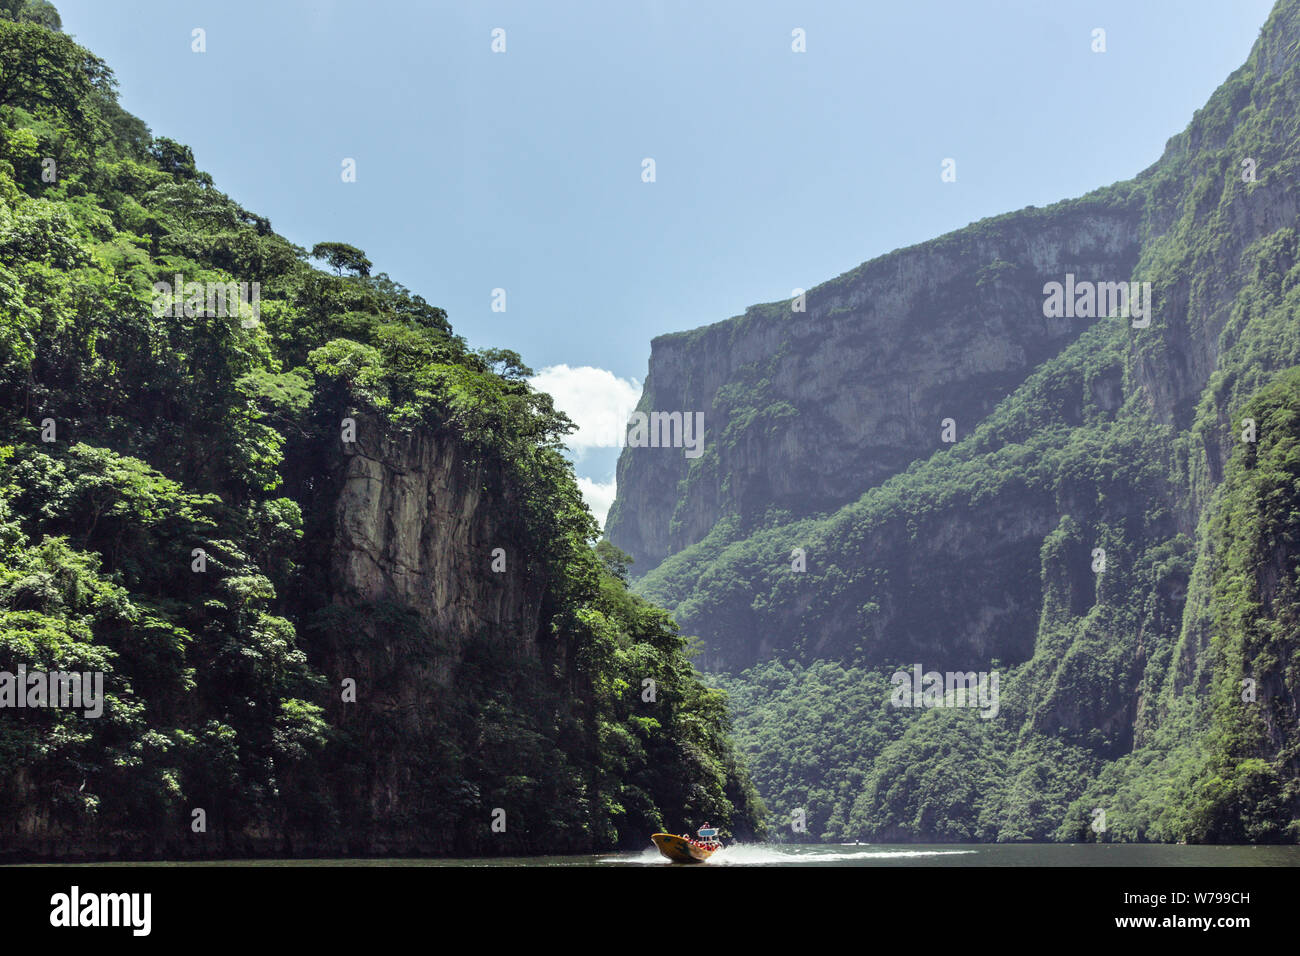 Dettaglio fotografia del Sumidero canyon in Chiapas Foto Stock